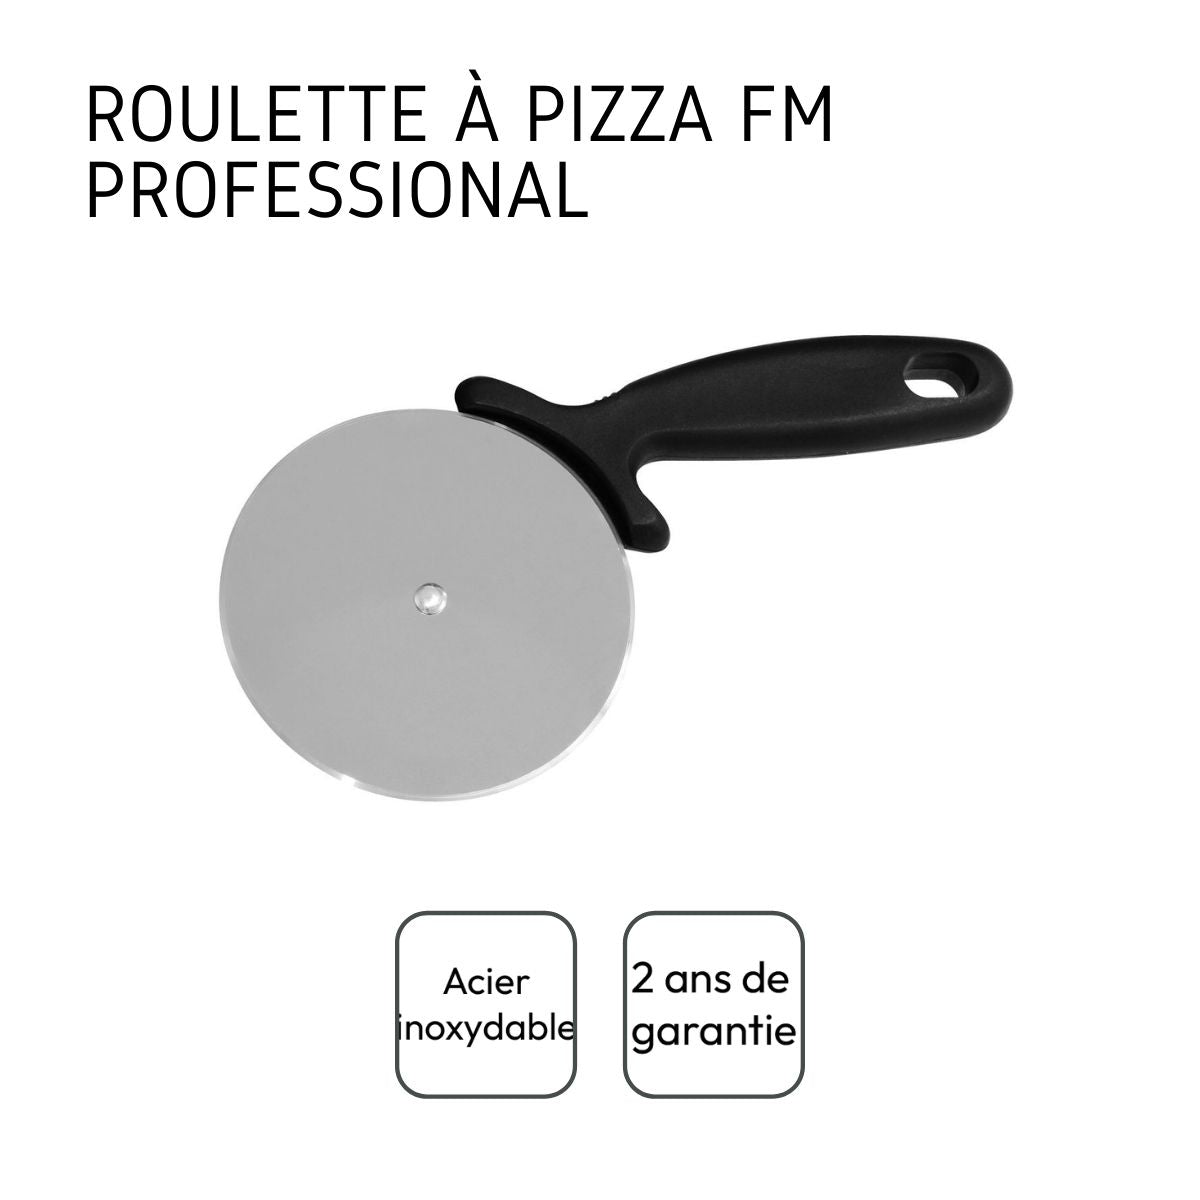 Roulette à pizza FM Professional